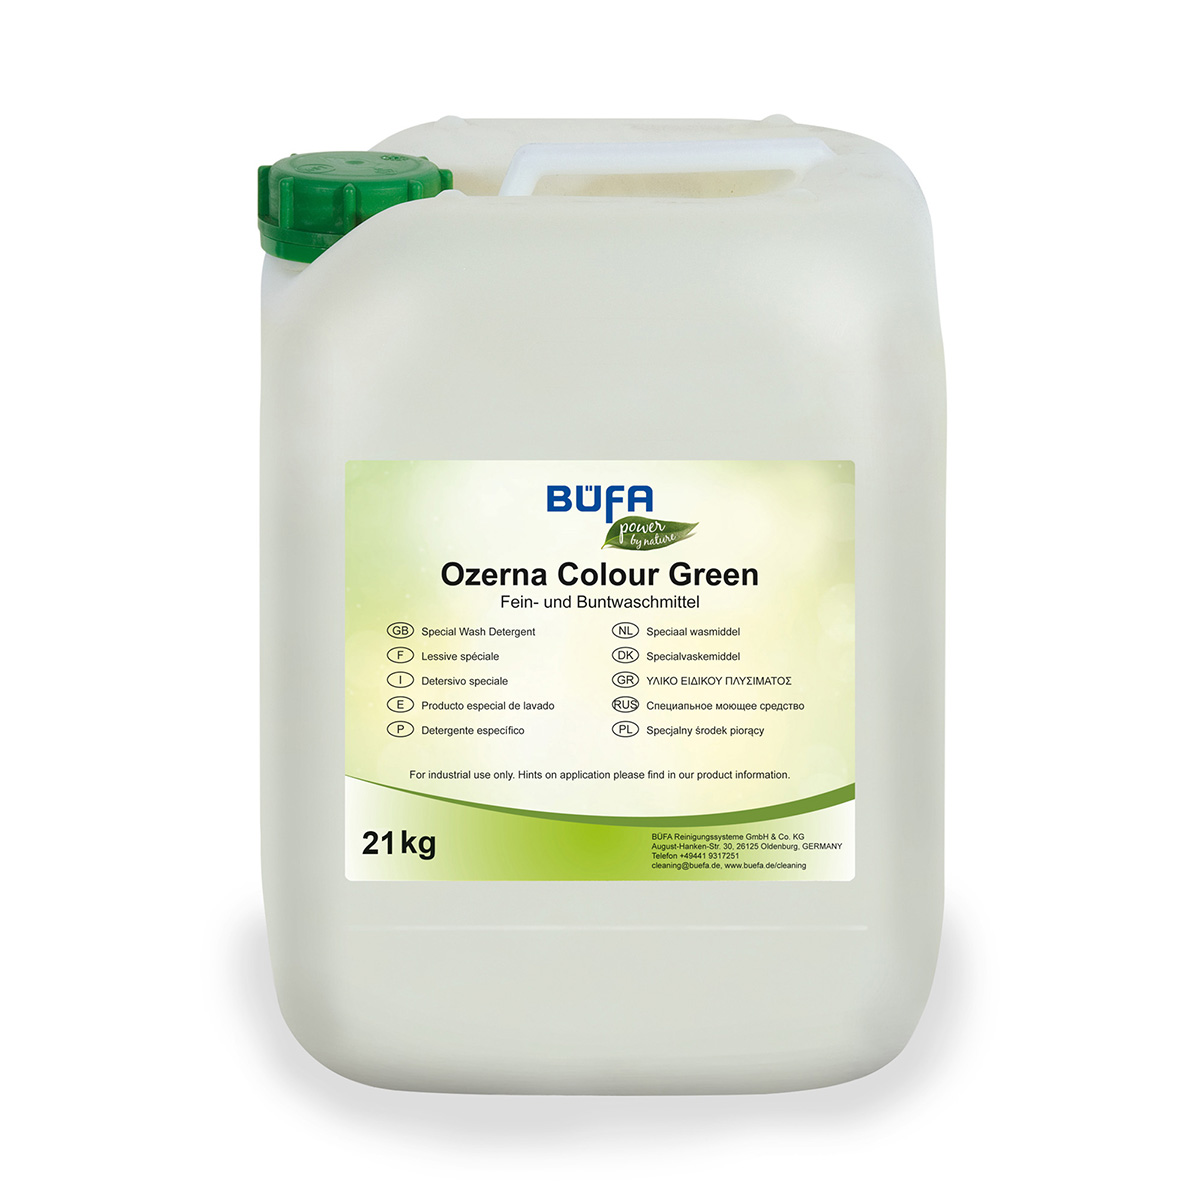 Ozerna Colour Green: Fein- und Buntwaschmittel 21 KG - BÜFA